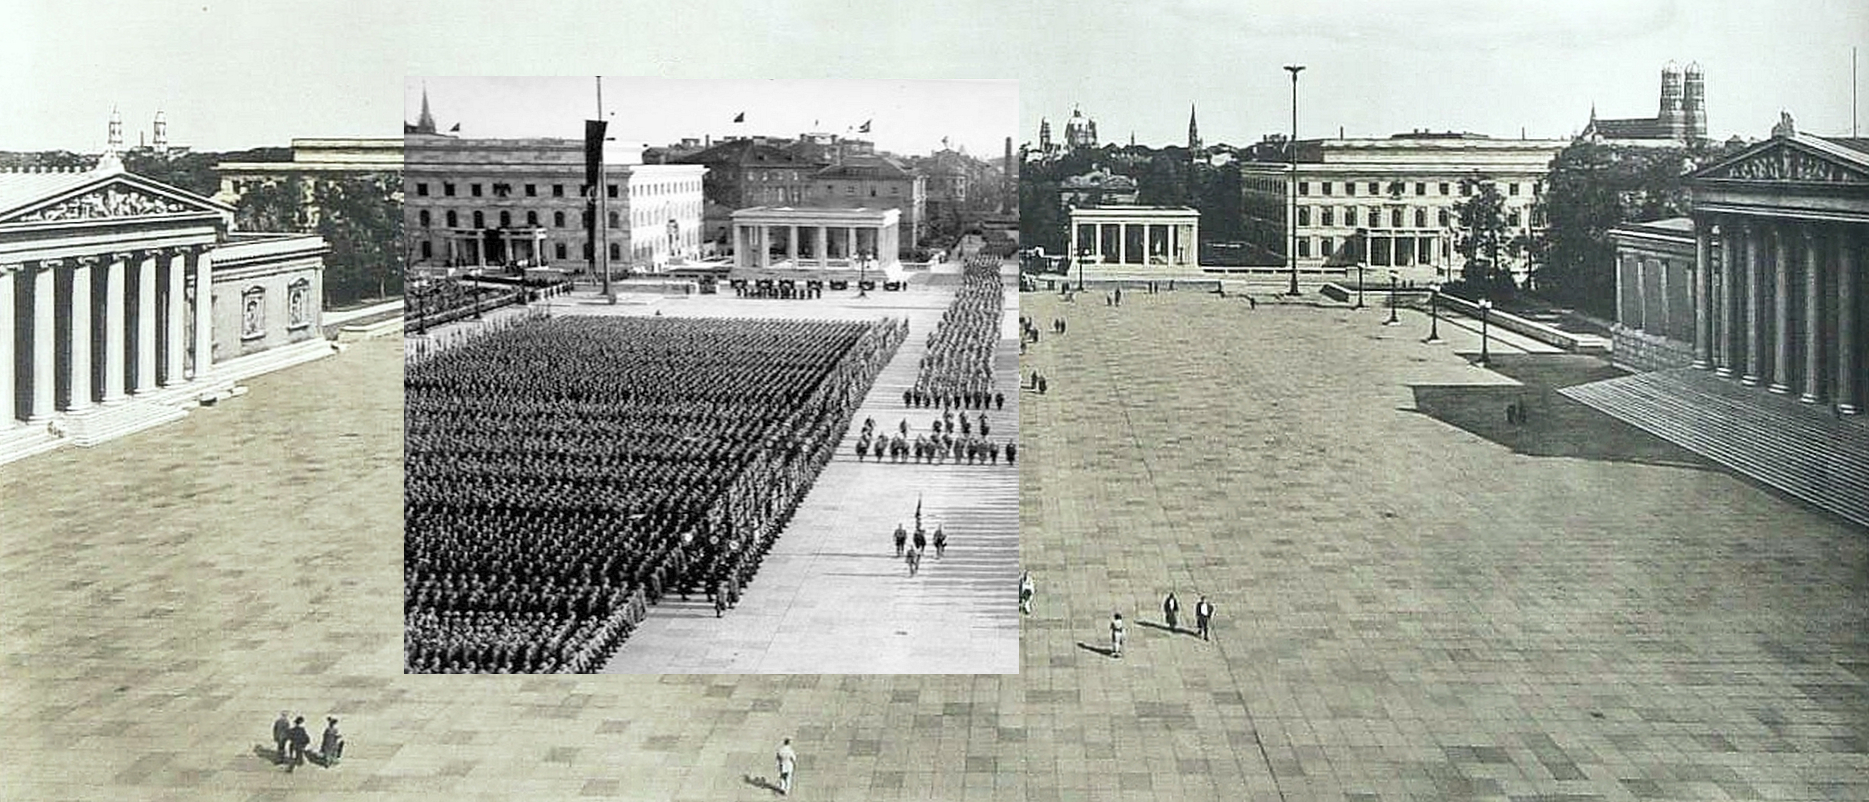 Königsplatz-Panorama zur NS-Zeit mit Naziaufmarsch - Montage